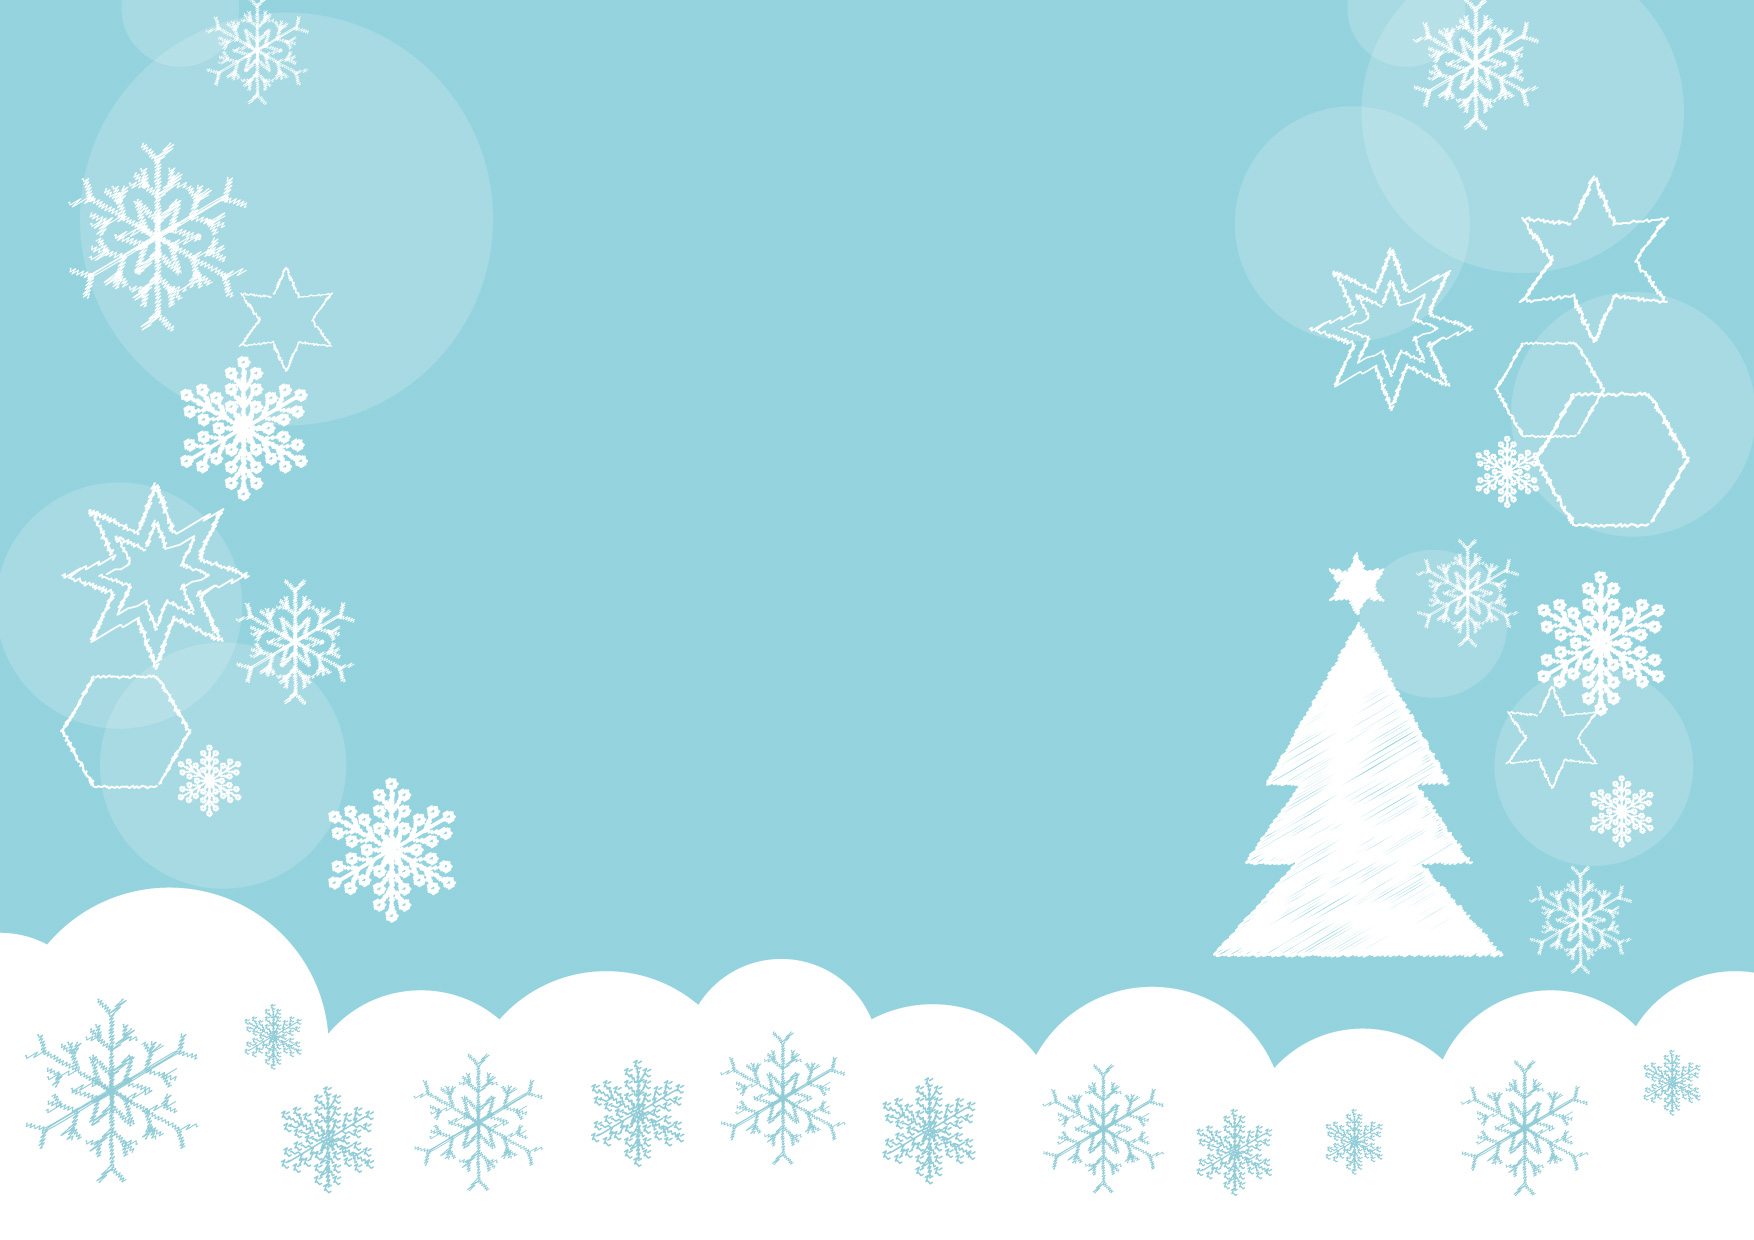 クリスマスに使えるシンプルな背景のイラスト4点を追加しました。